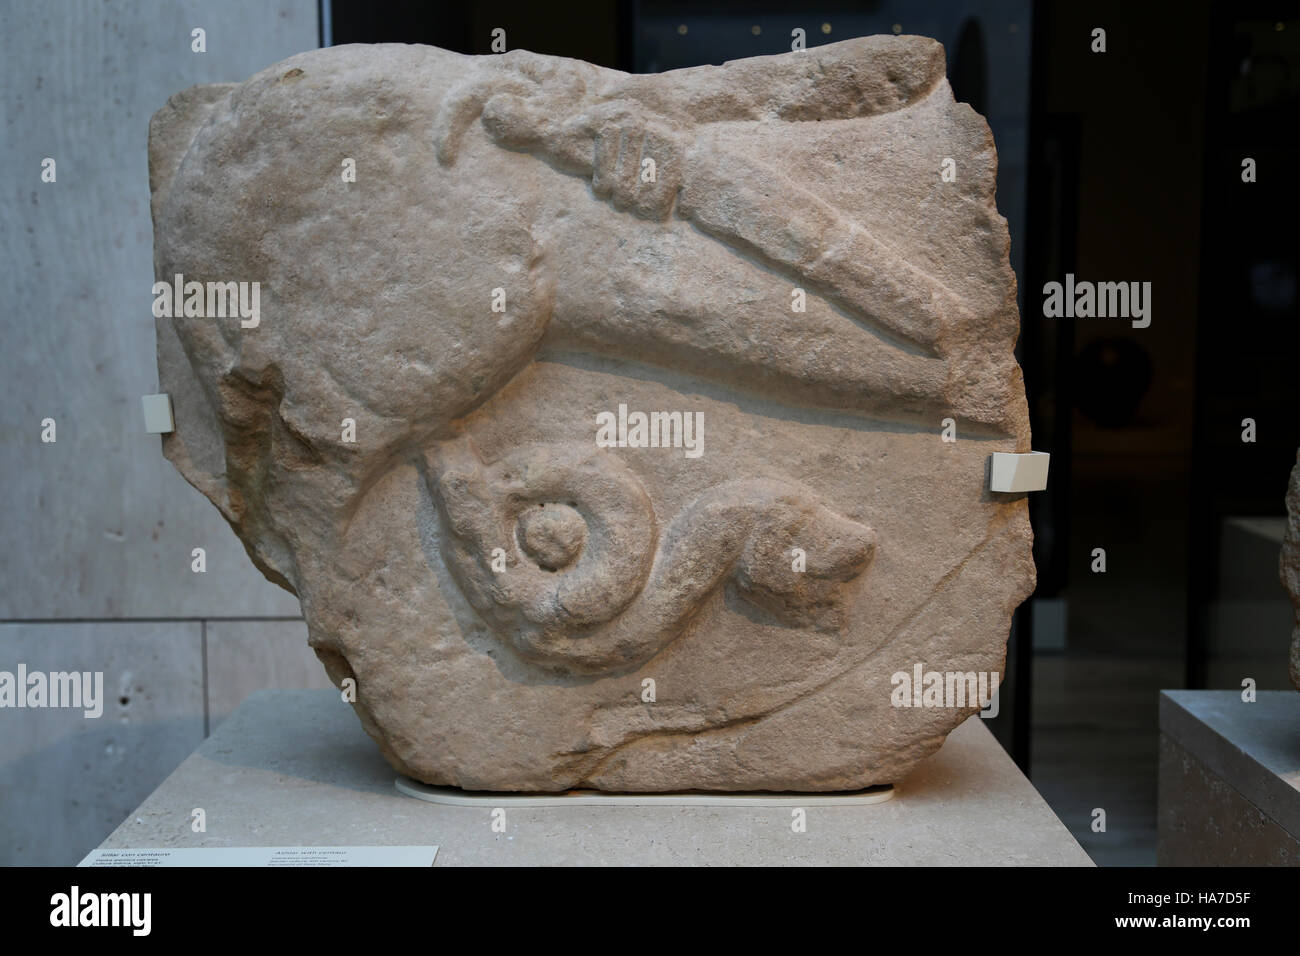 Iberischen Kultur. Ashiar mit Zentaur. Unten ein colied Sanke. 6. Jahrhundert vor Christus. Nekropole von Pozo Moro, Chinchilla de Monte-Aragon, Albacete, Spanien Stockfoto